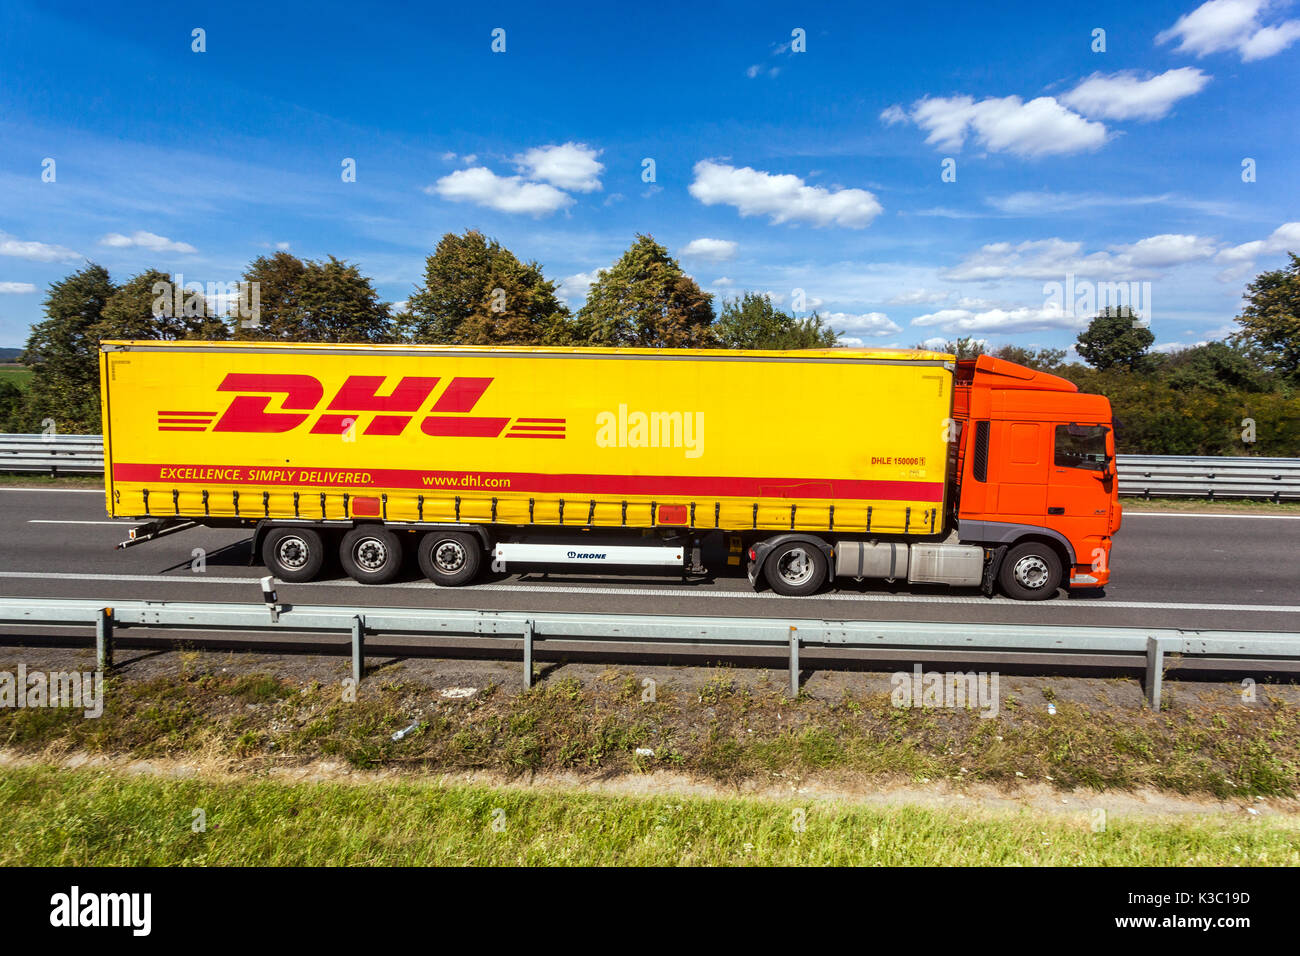 DHL remorque pour camion sur l'autoroute, service de livraison de colis camion, République Tchèque Europe Banque D'Images